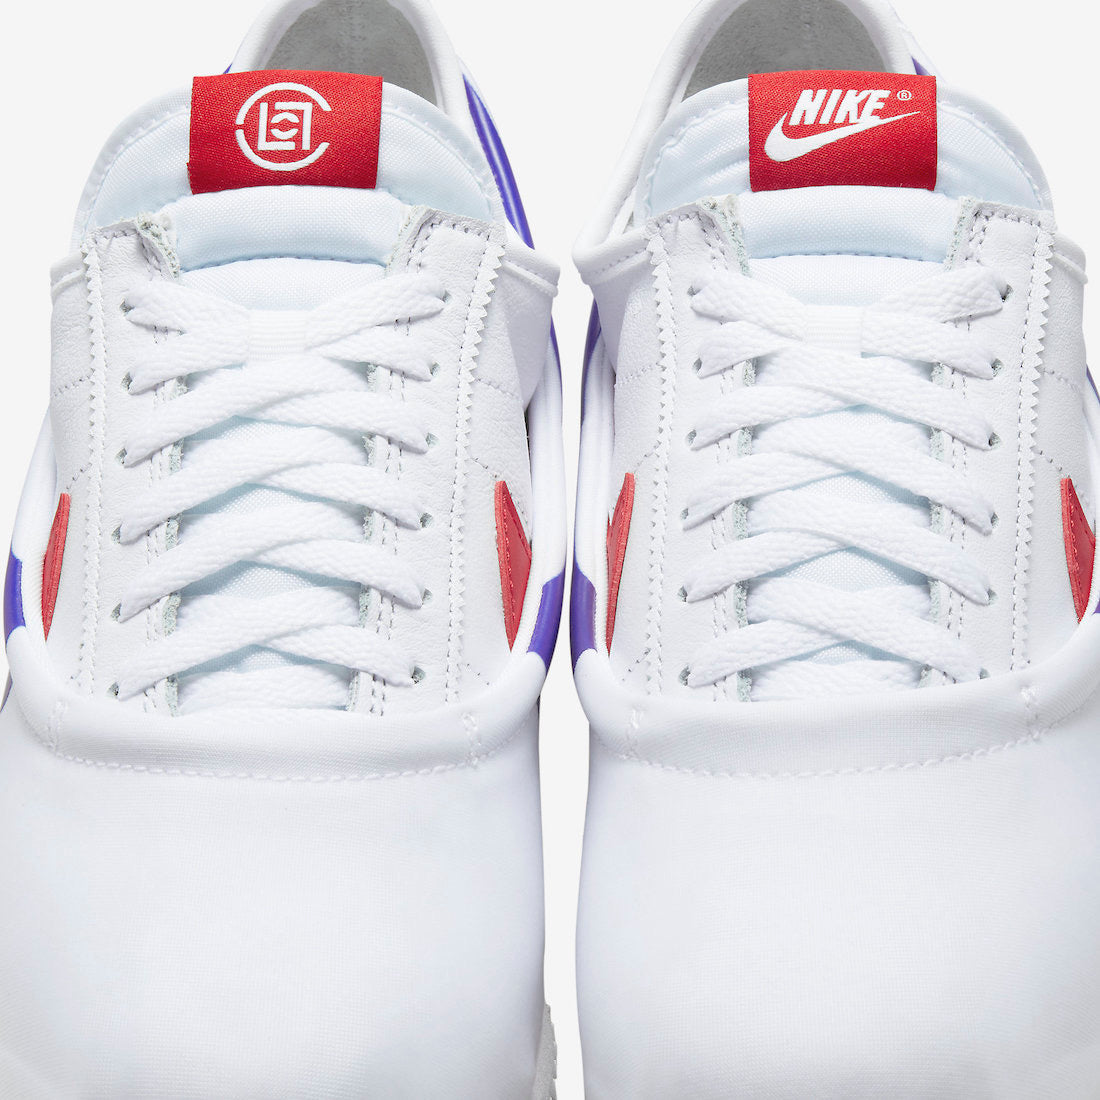 CLOT x Nike Cortez “Forrest Gump”